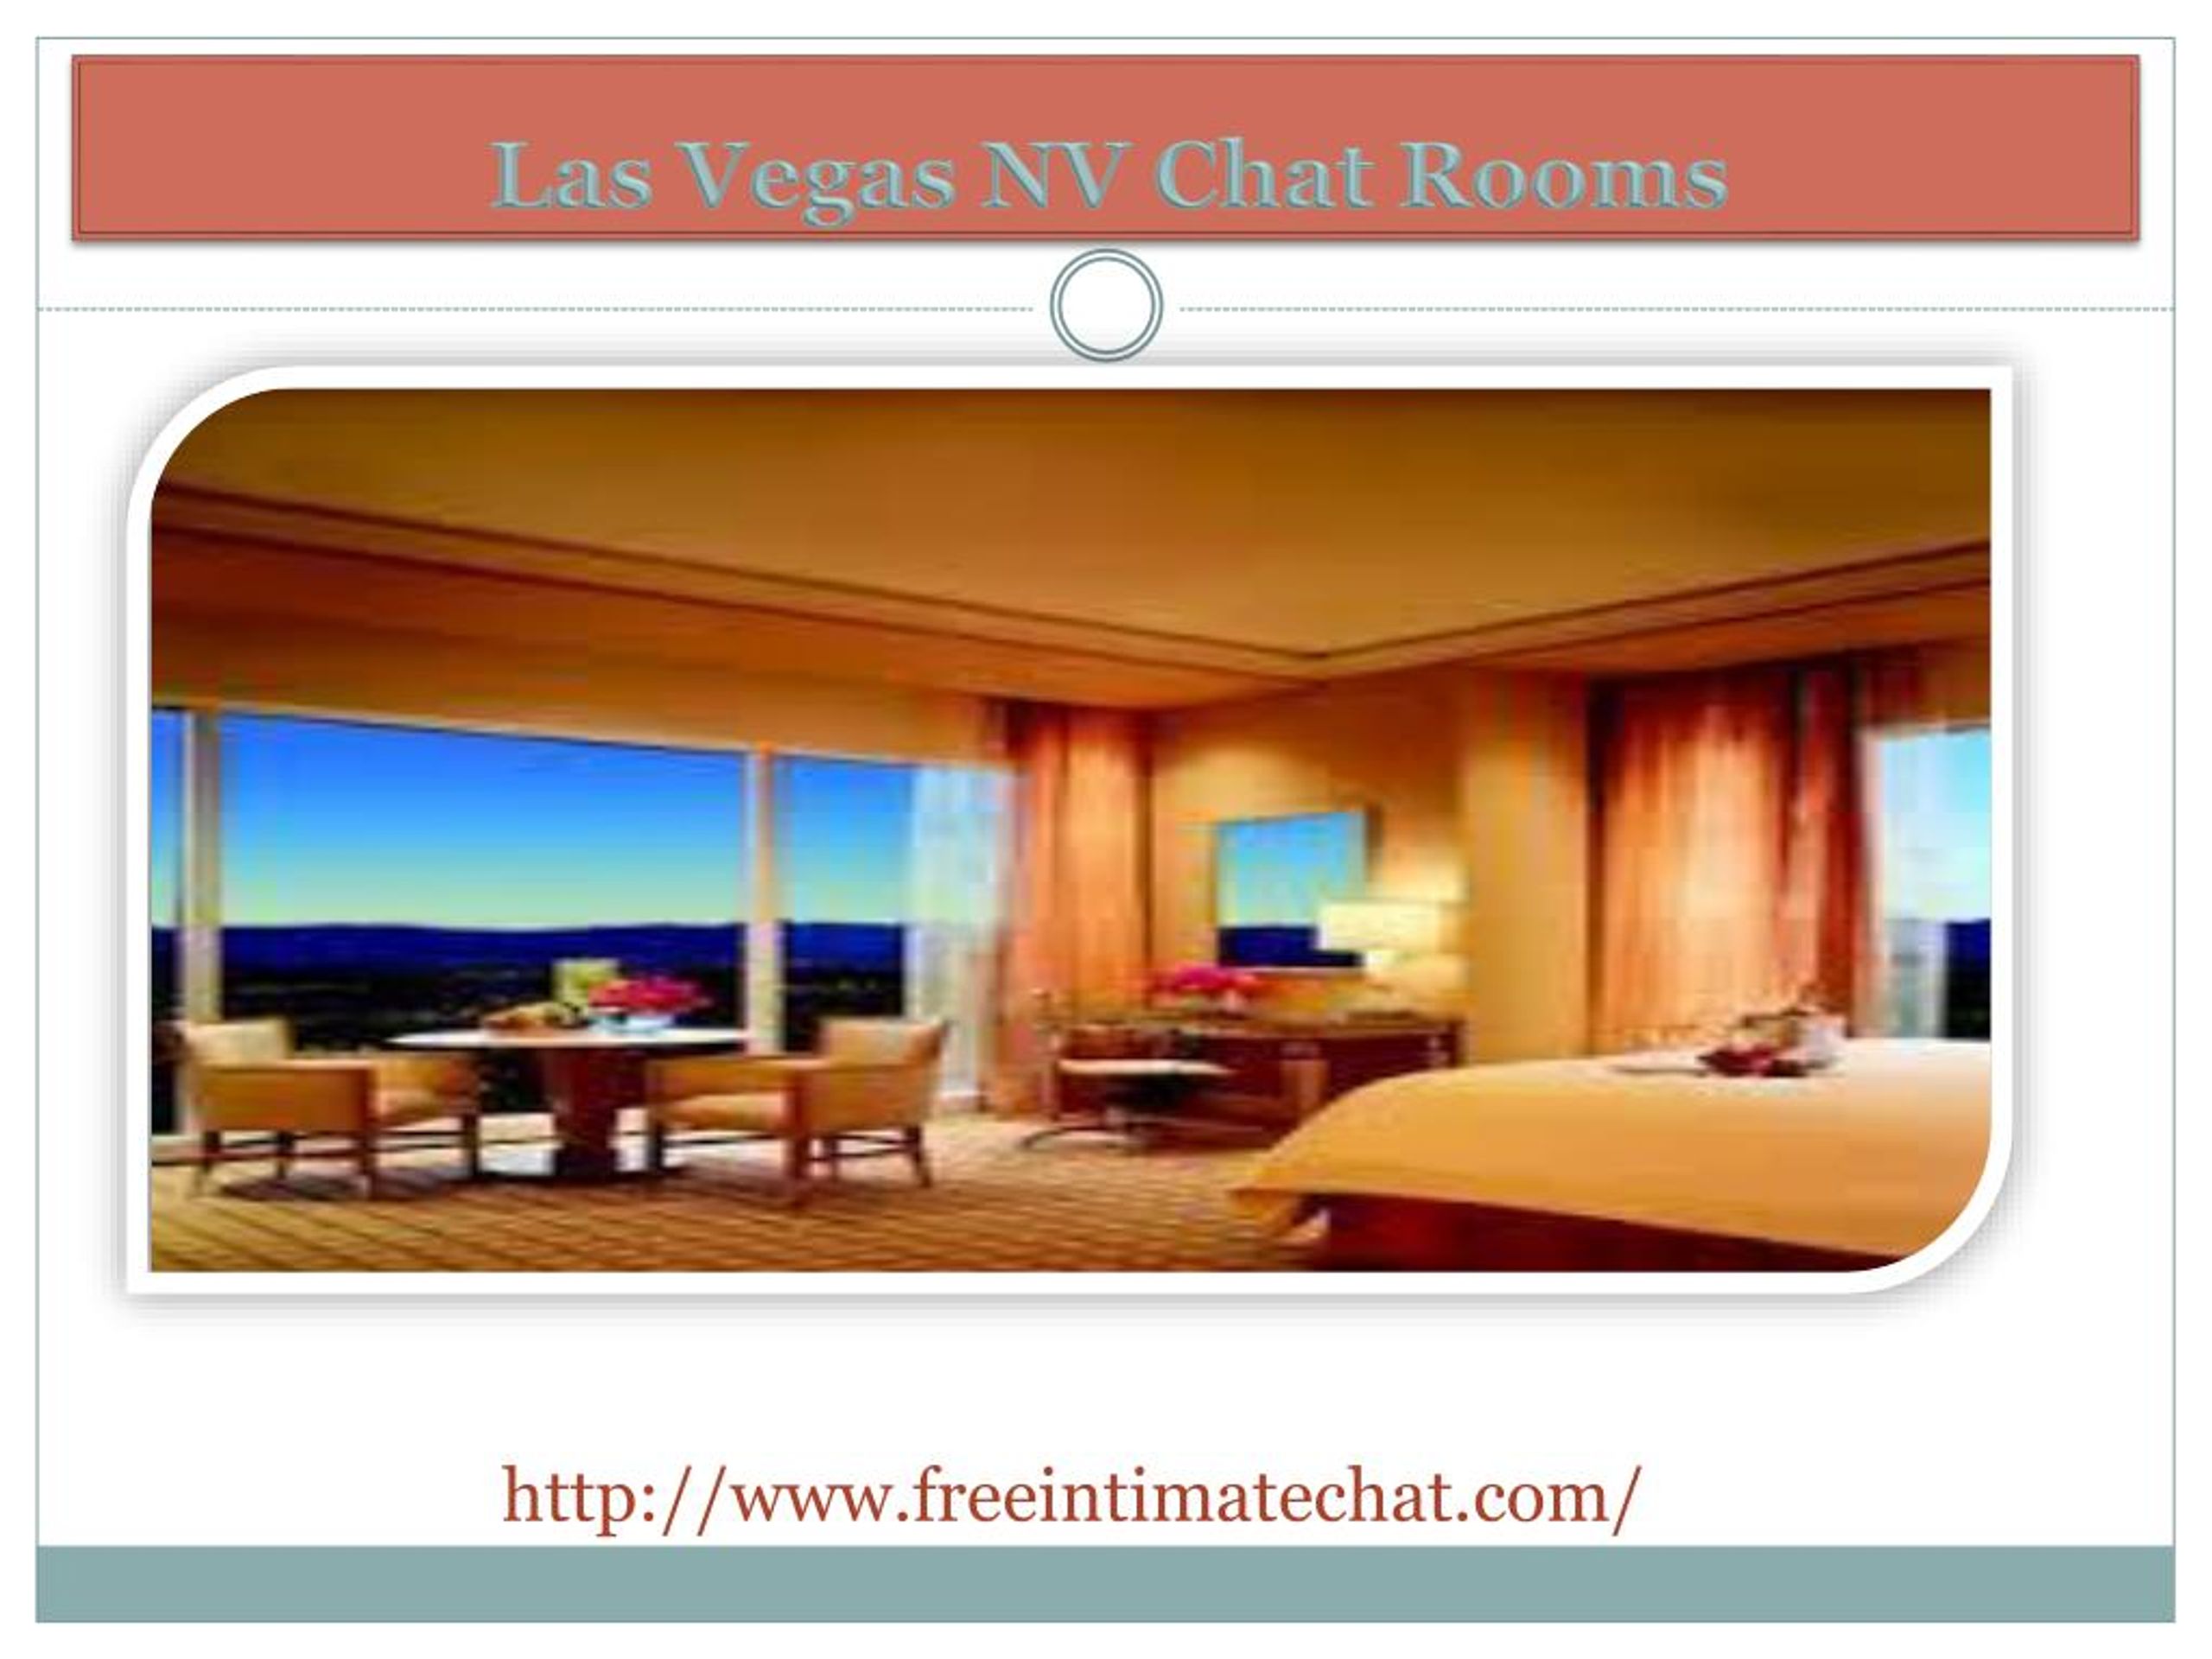 In chat room in Las Vegas